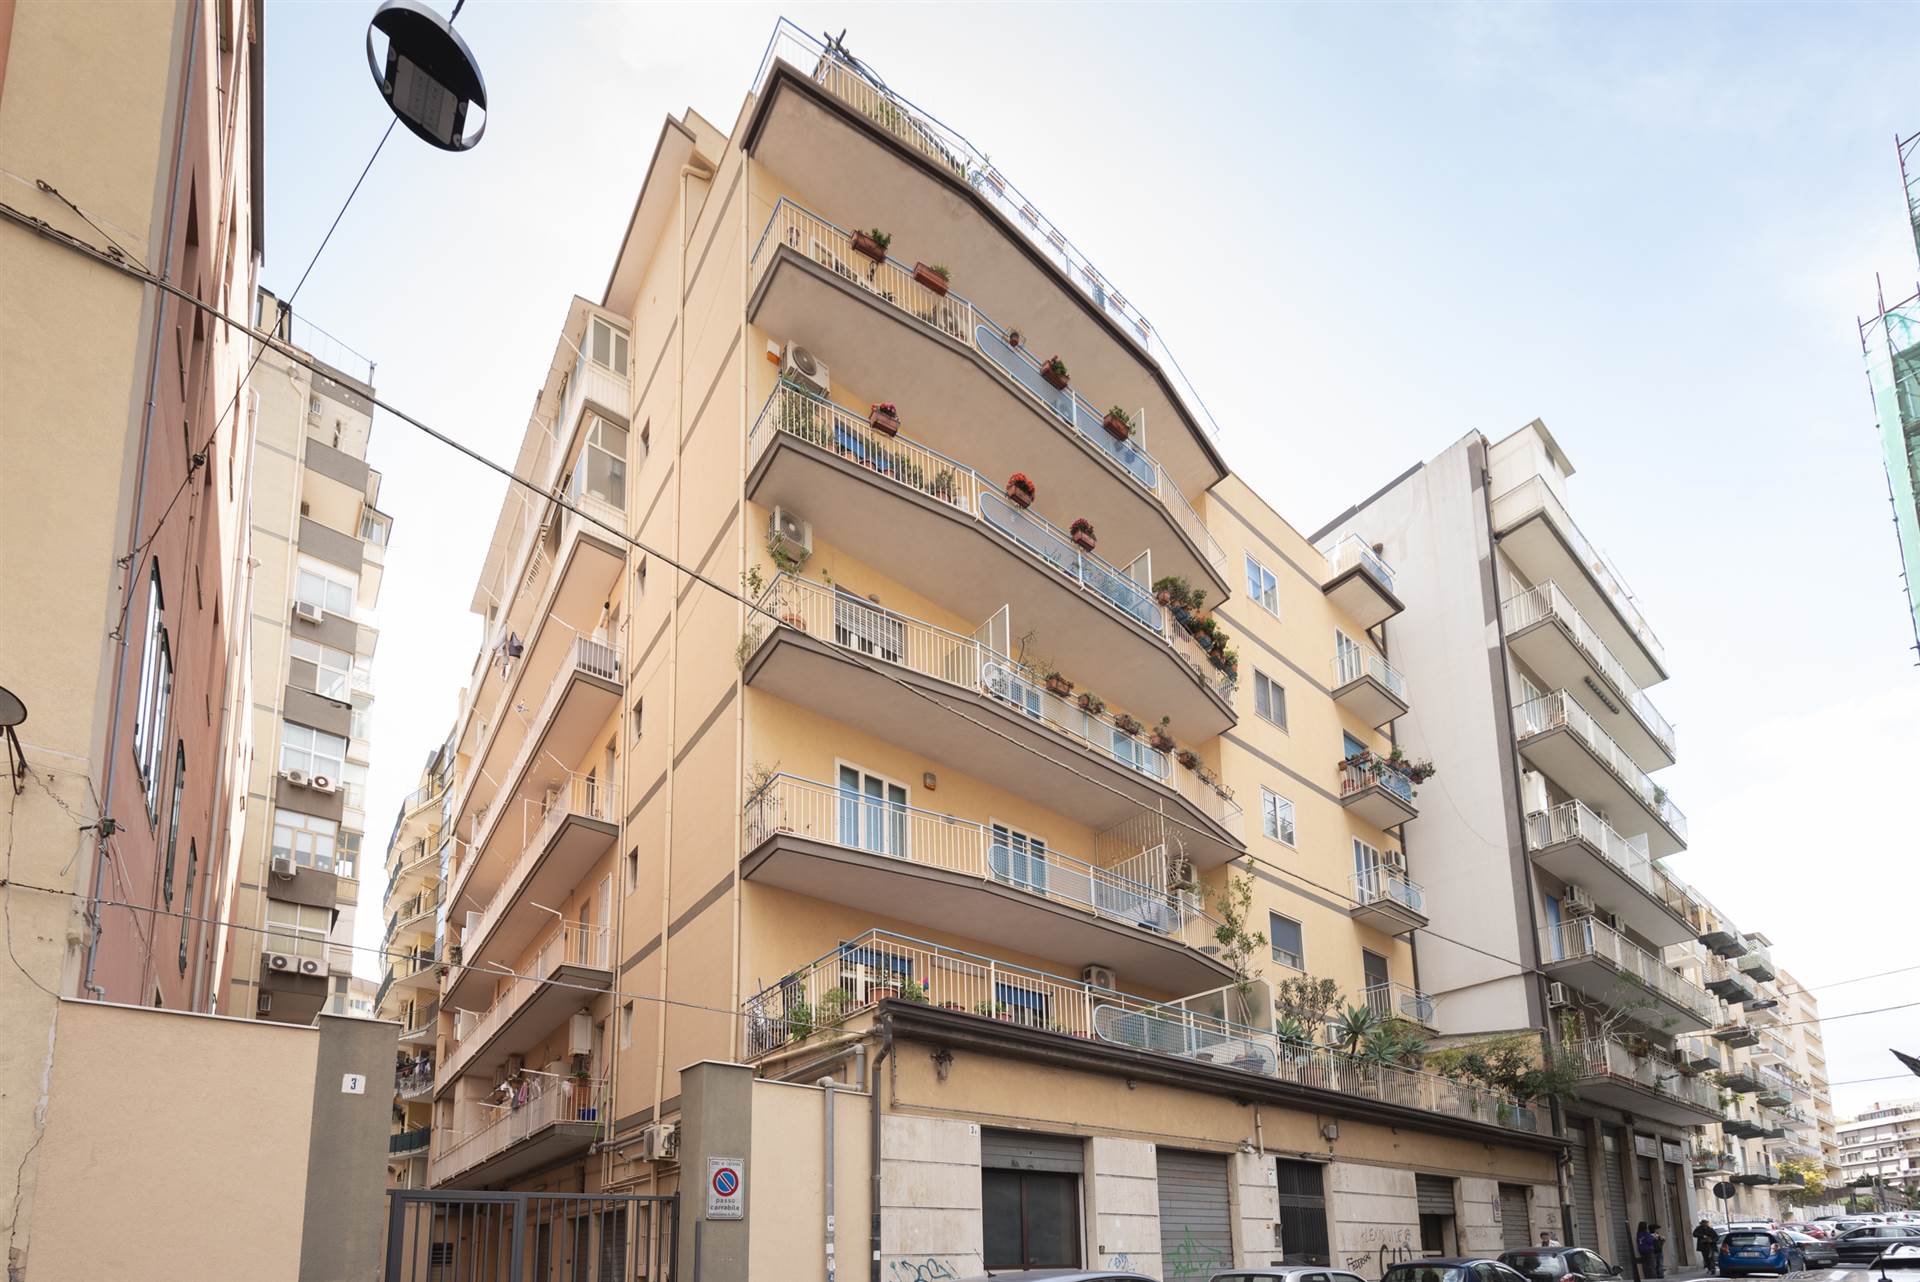 Rif: RD35 Via G.B. Impallomeni Rama immobiliare propone in vendita un appartamento di 140 mq catastali al quarto piano ascensorato. La proprietà si 